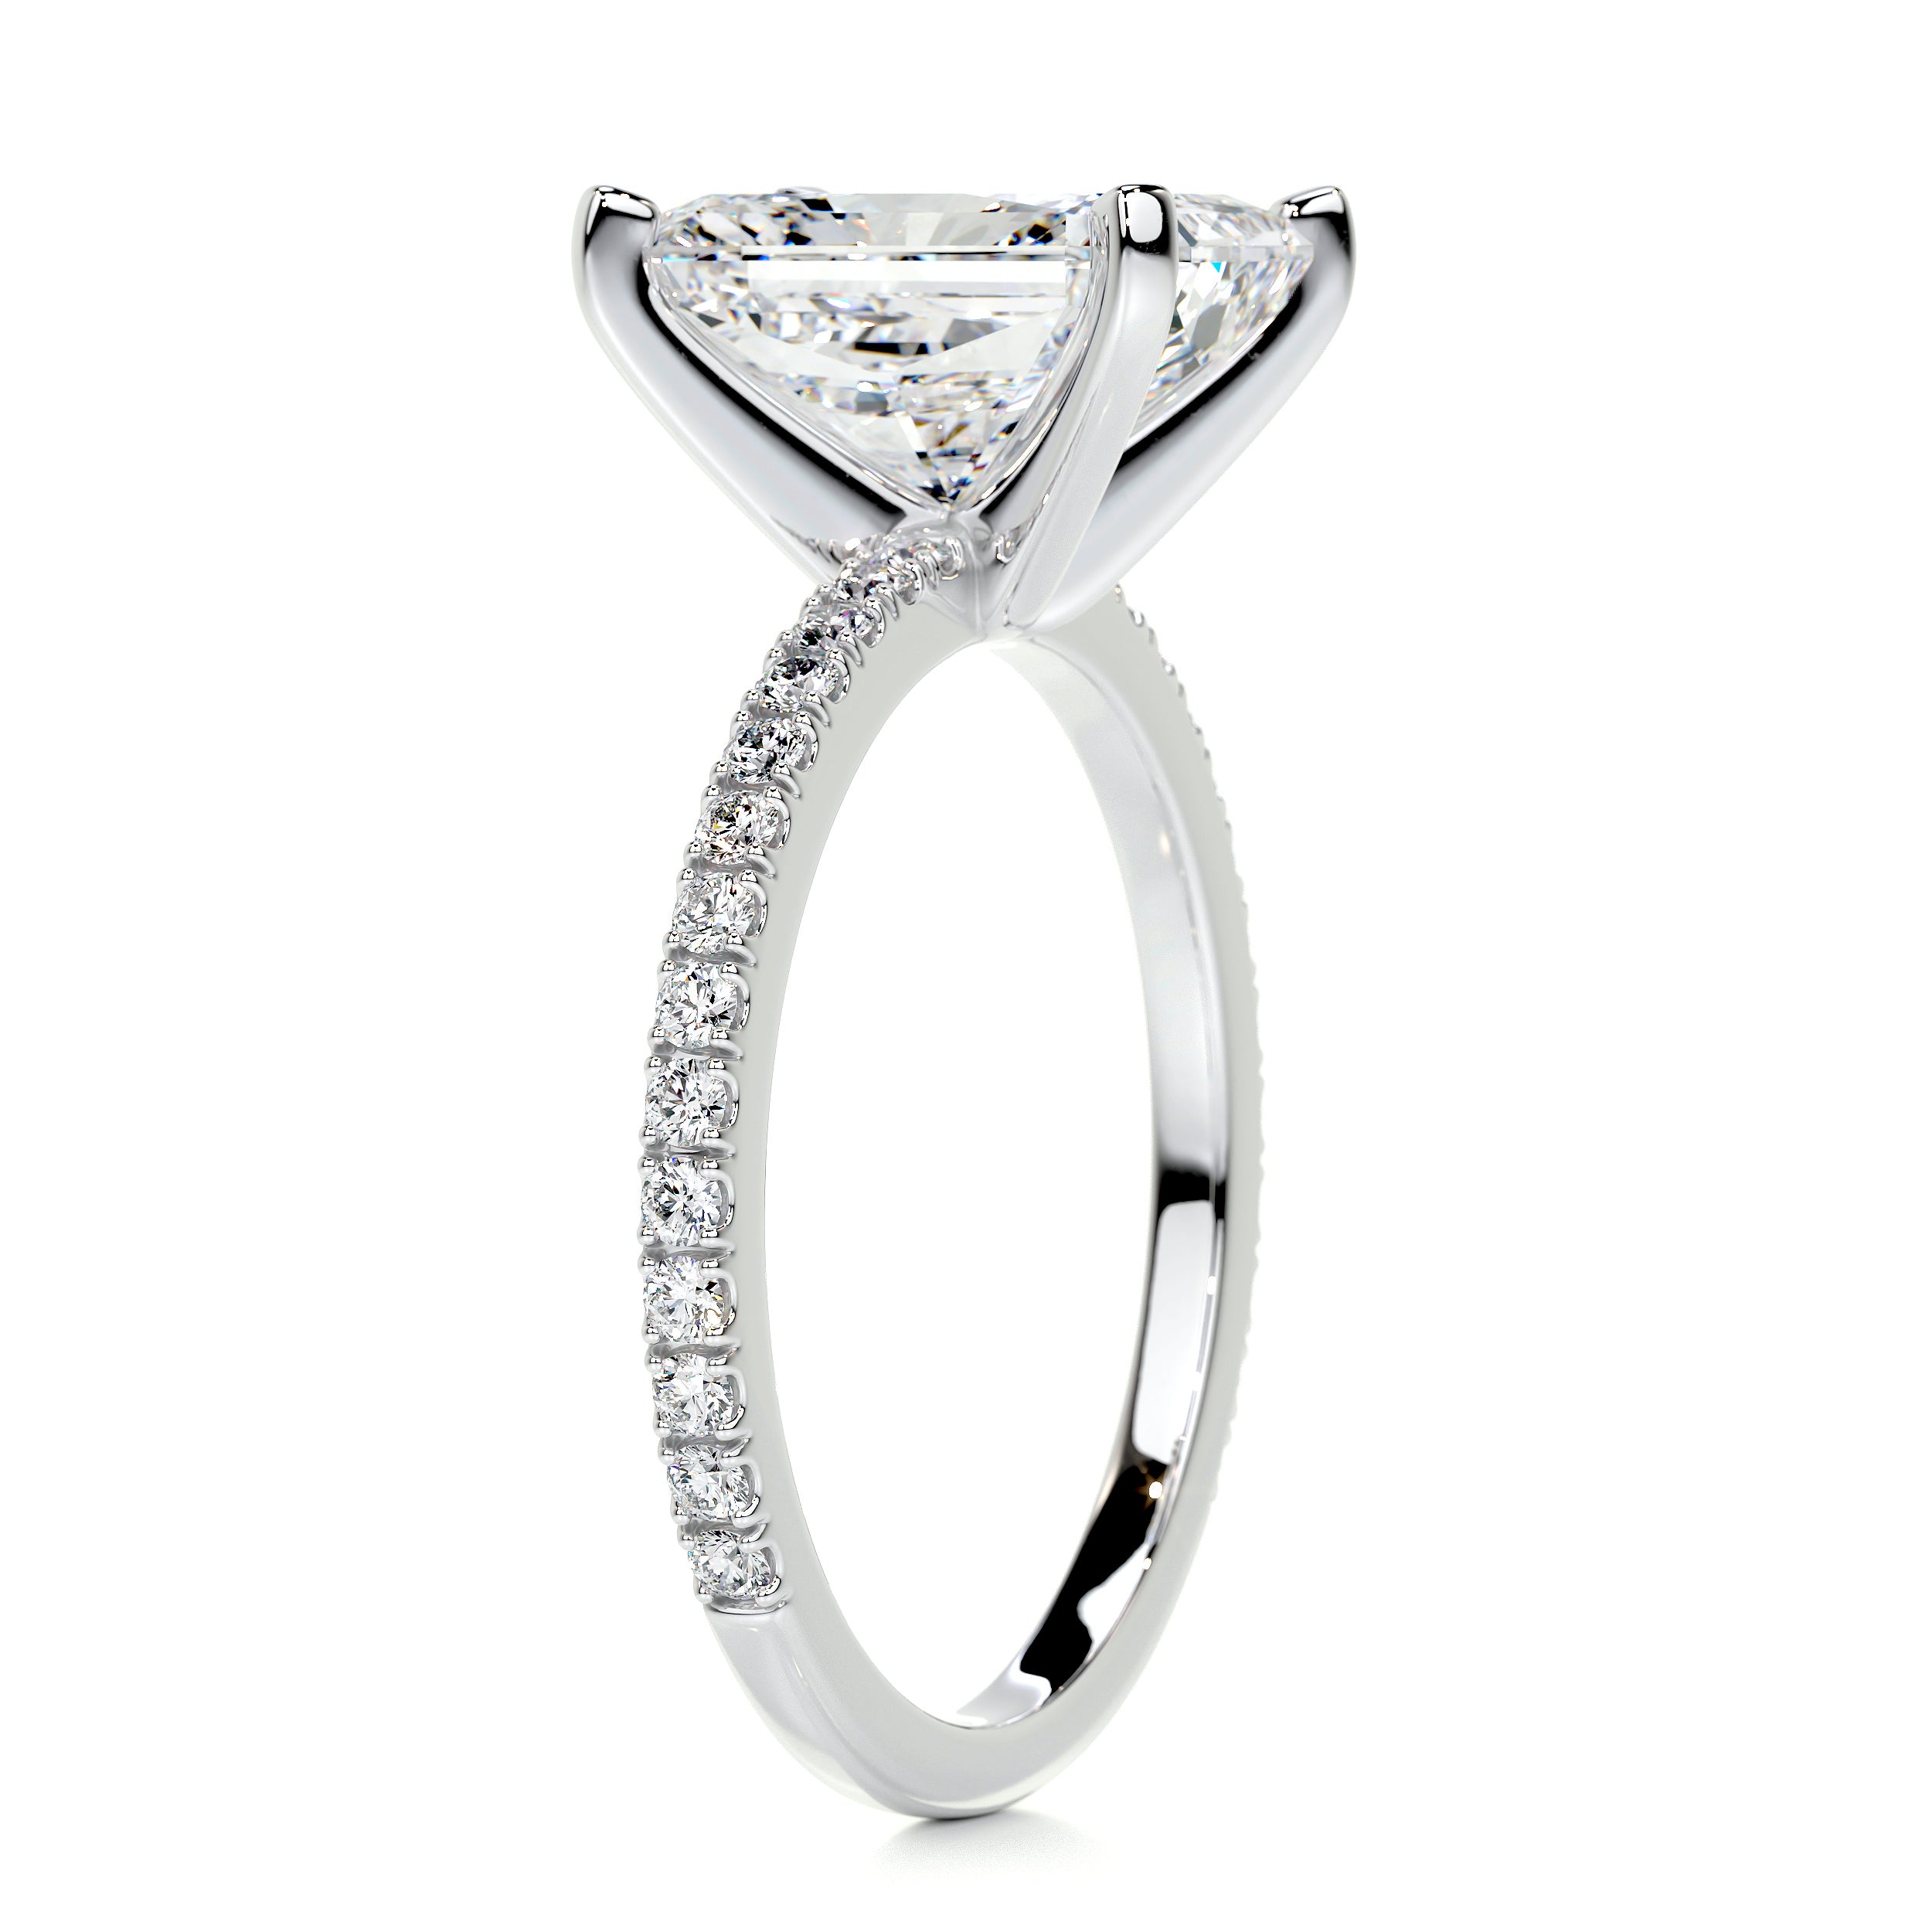 Audrey Diamond Engagement Ring   (3.5 Carat) -14K White Gold